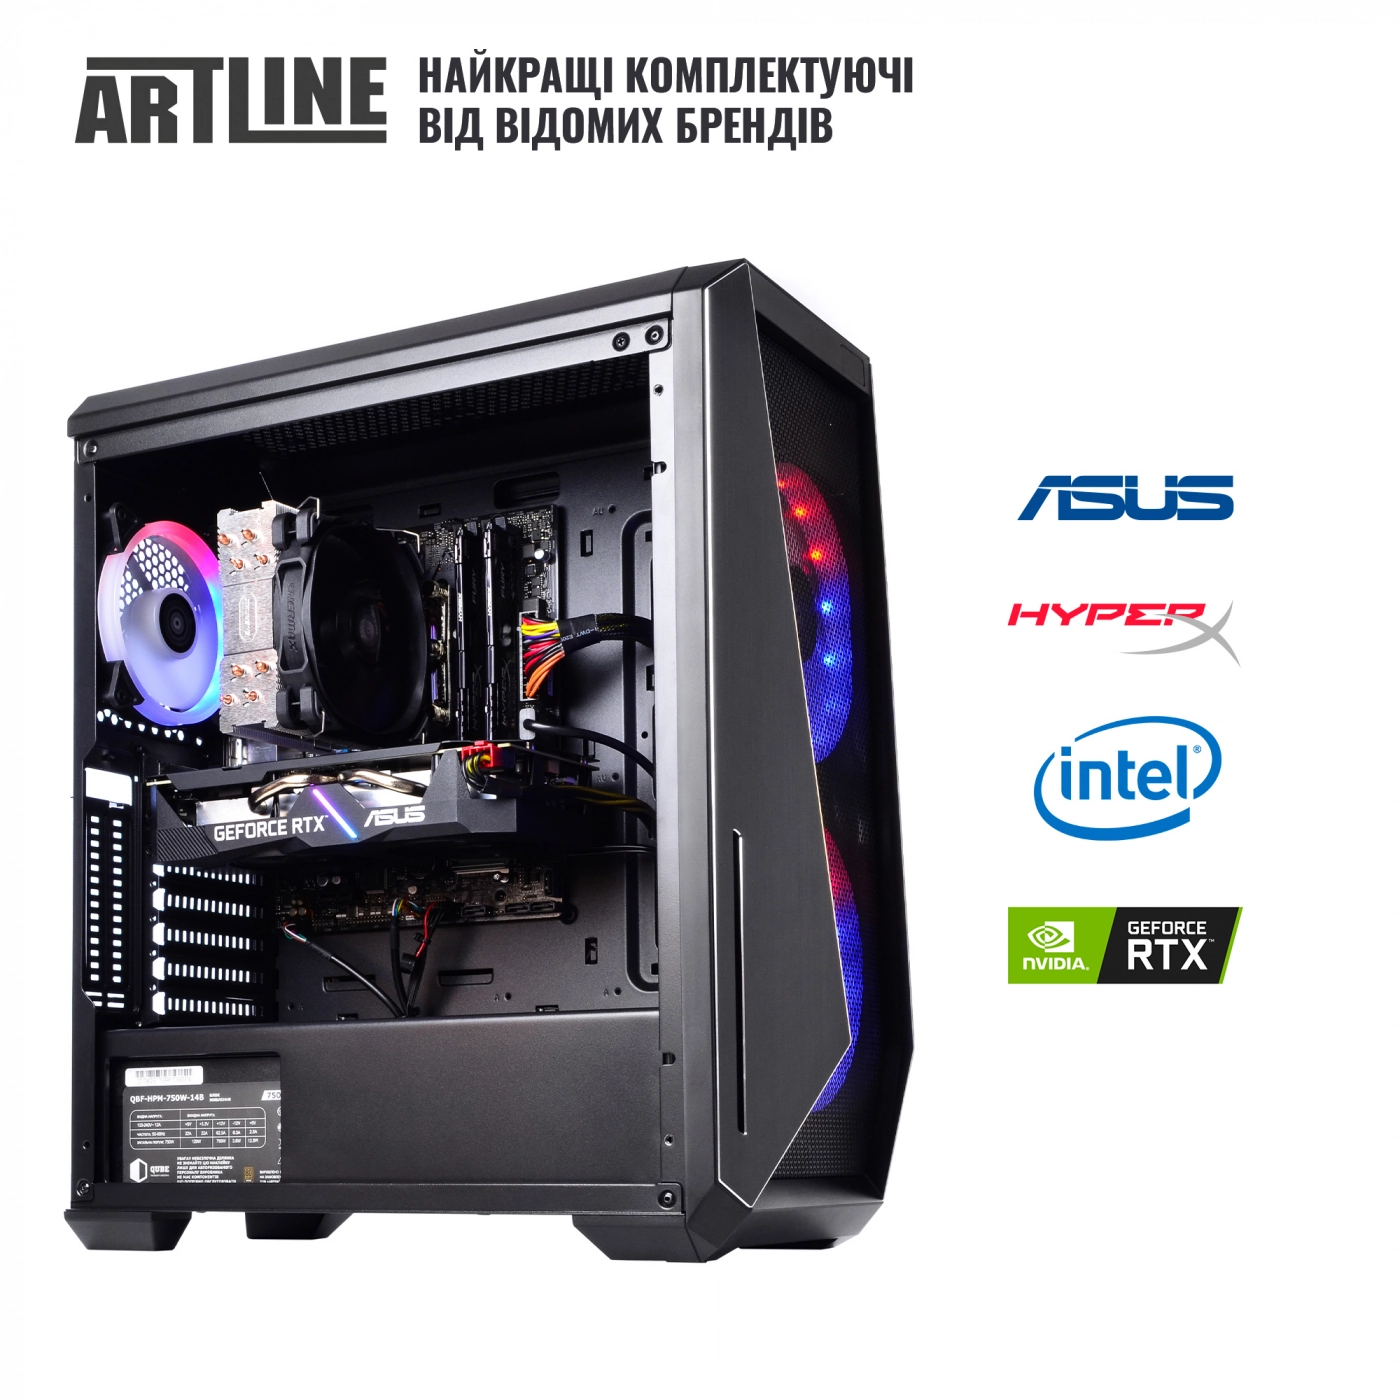 Купить Компьютер ARTLINE Gaming X90v15 - фото 8